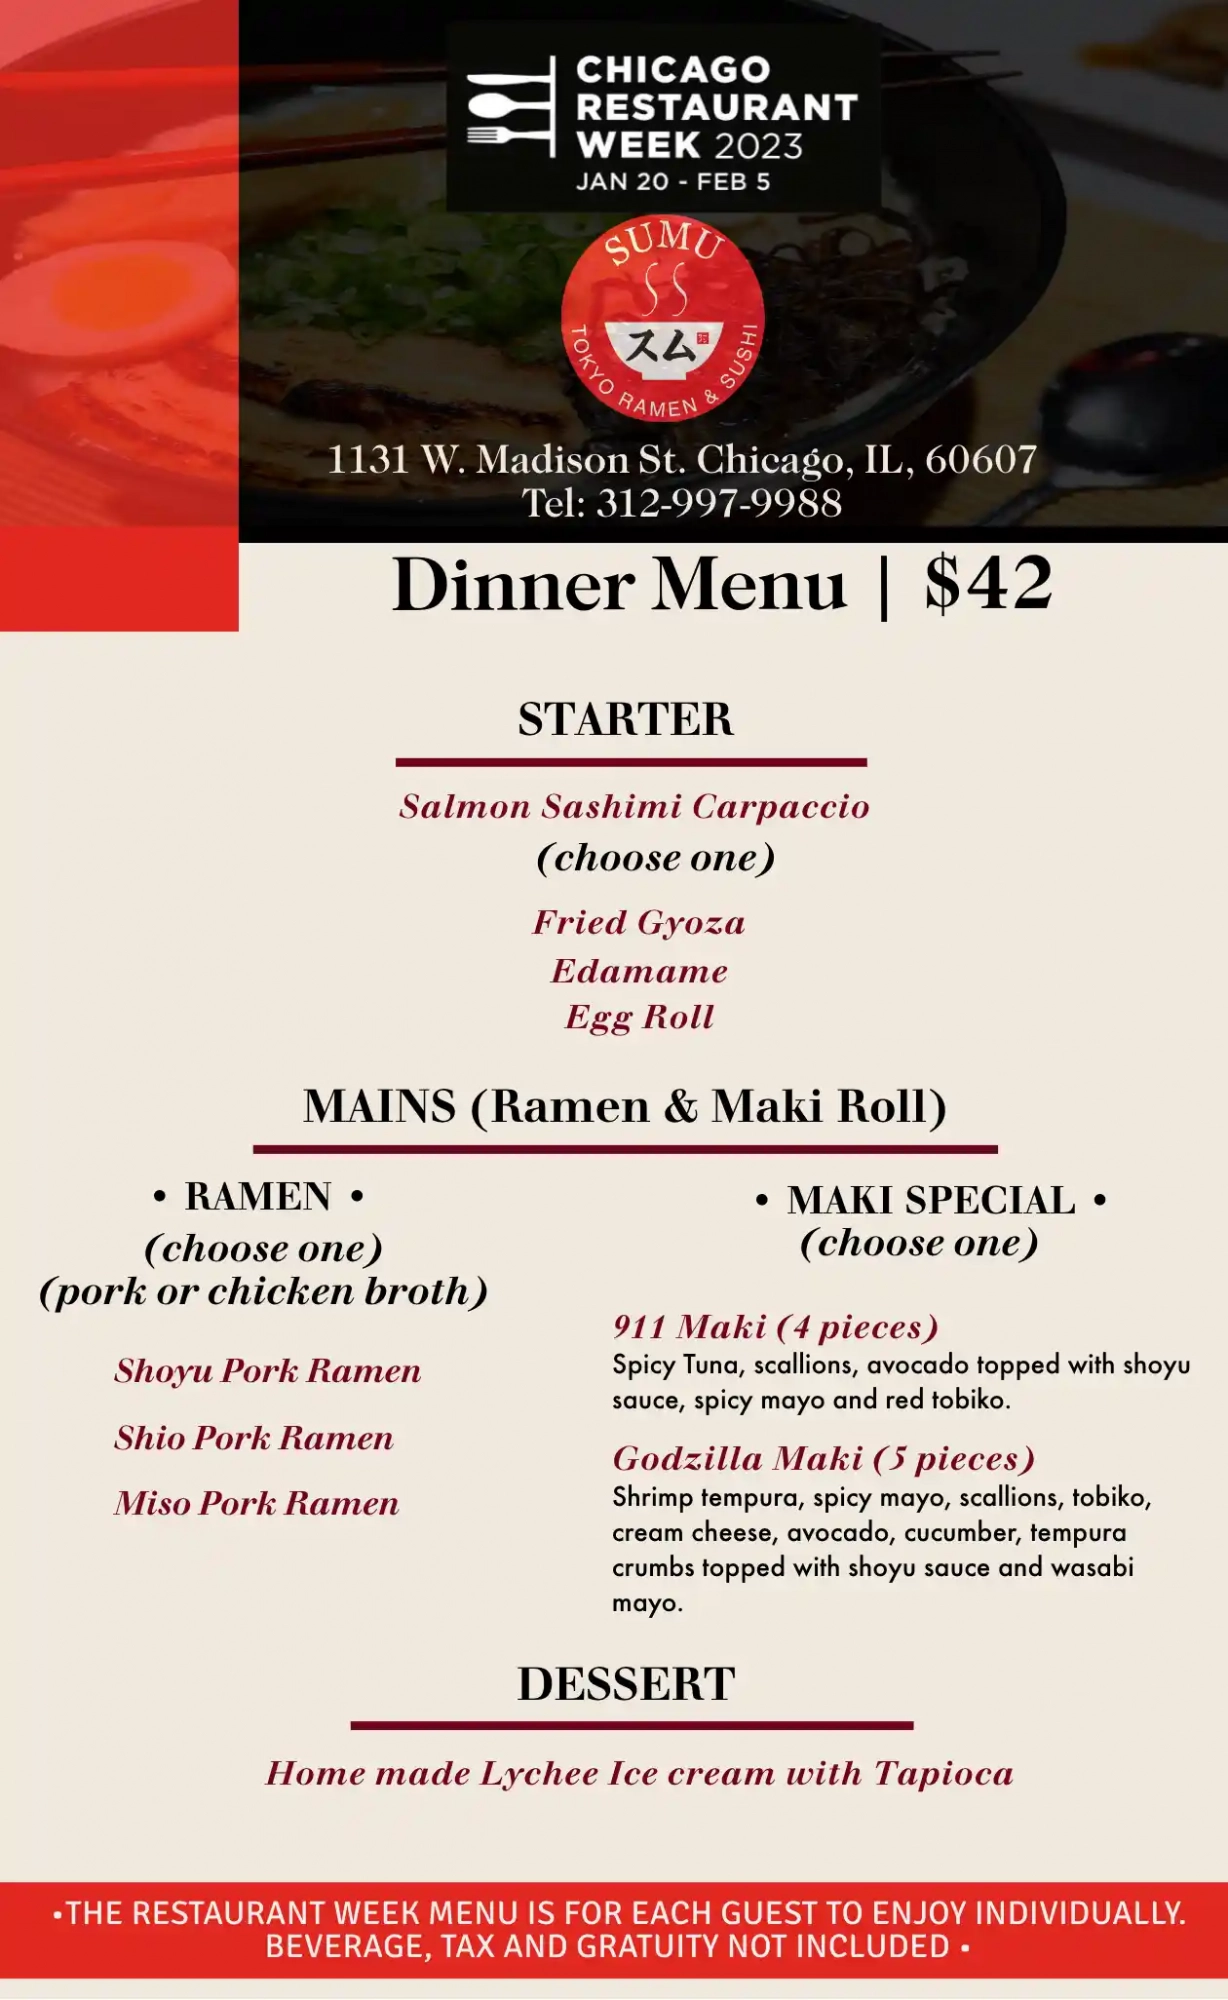 Chicago Restaurant Week 2023 Menu Sumo Tokyo Ramen Dinner